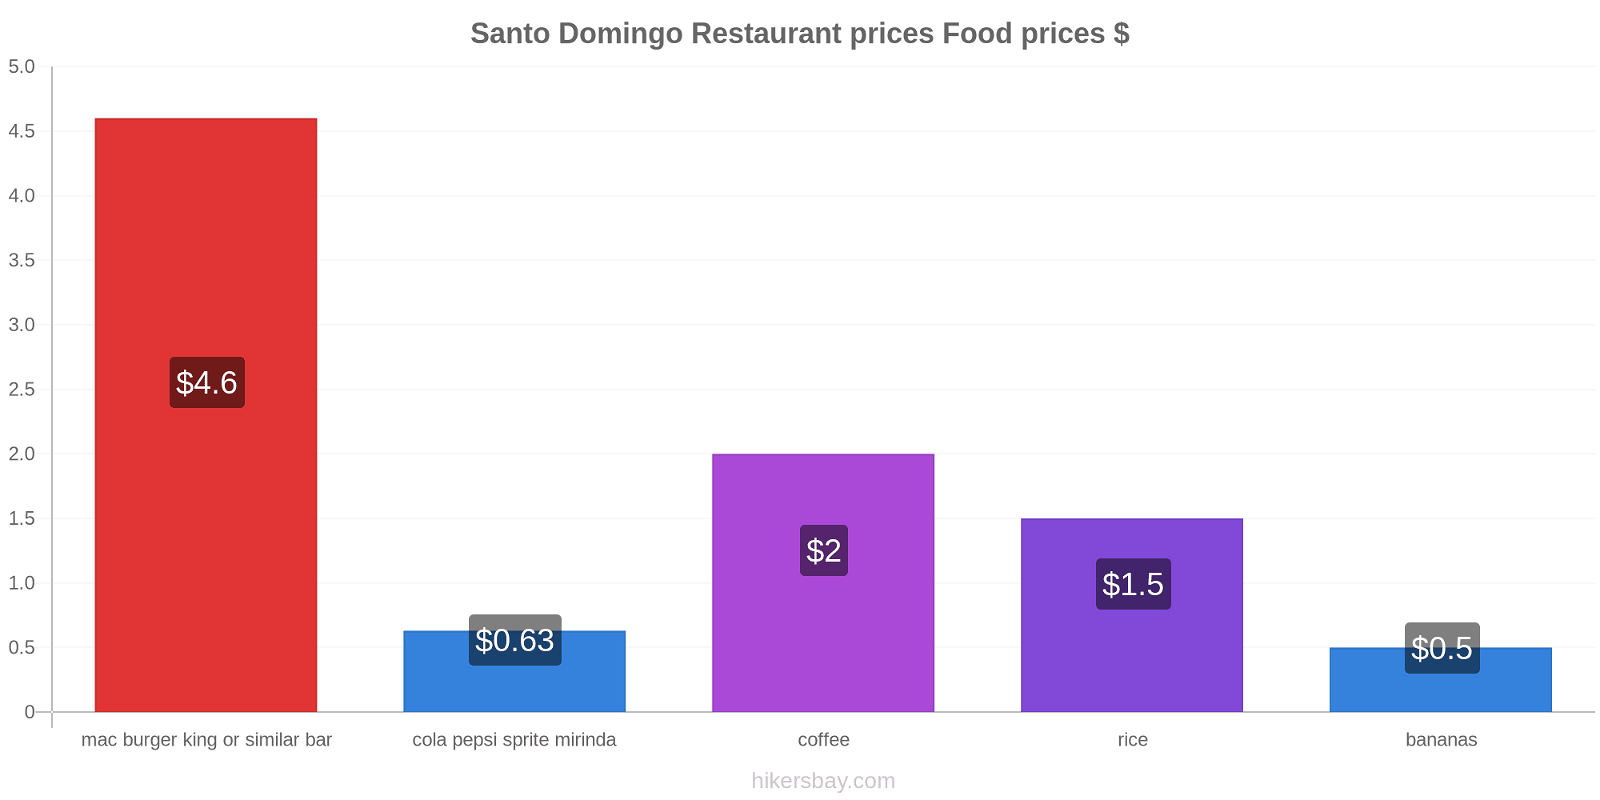 Santo Domingo price changes hikersbay.com